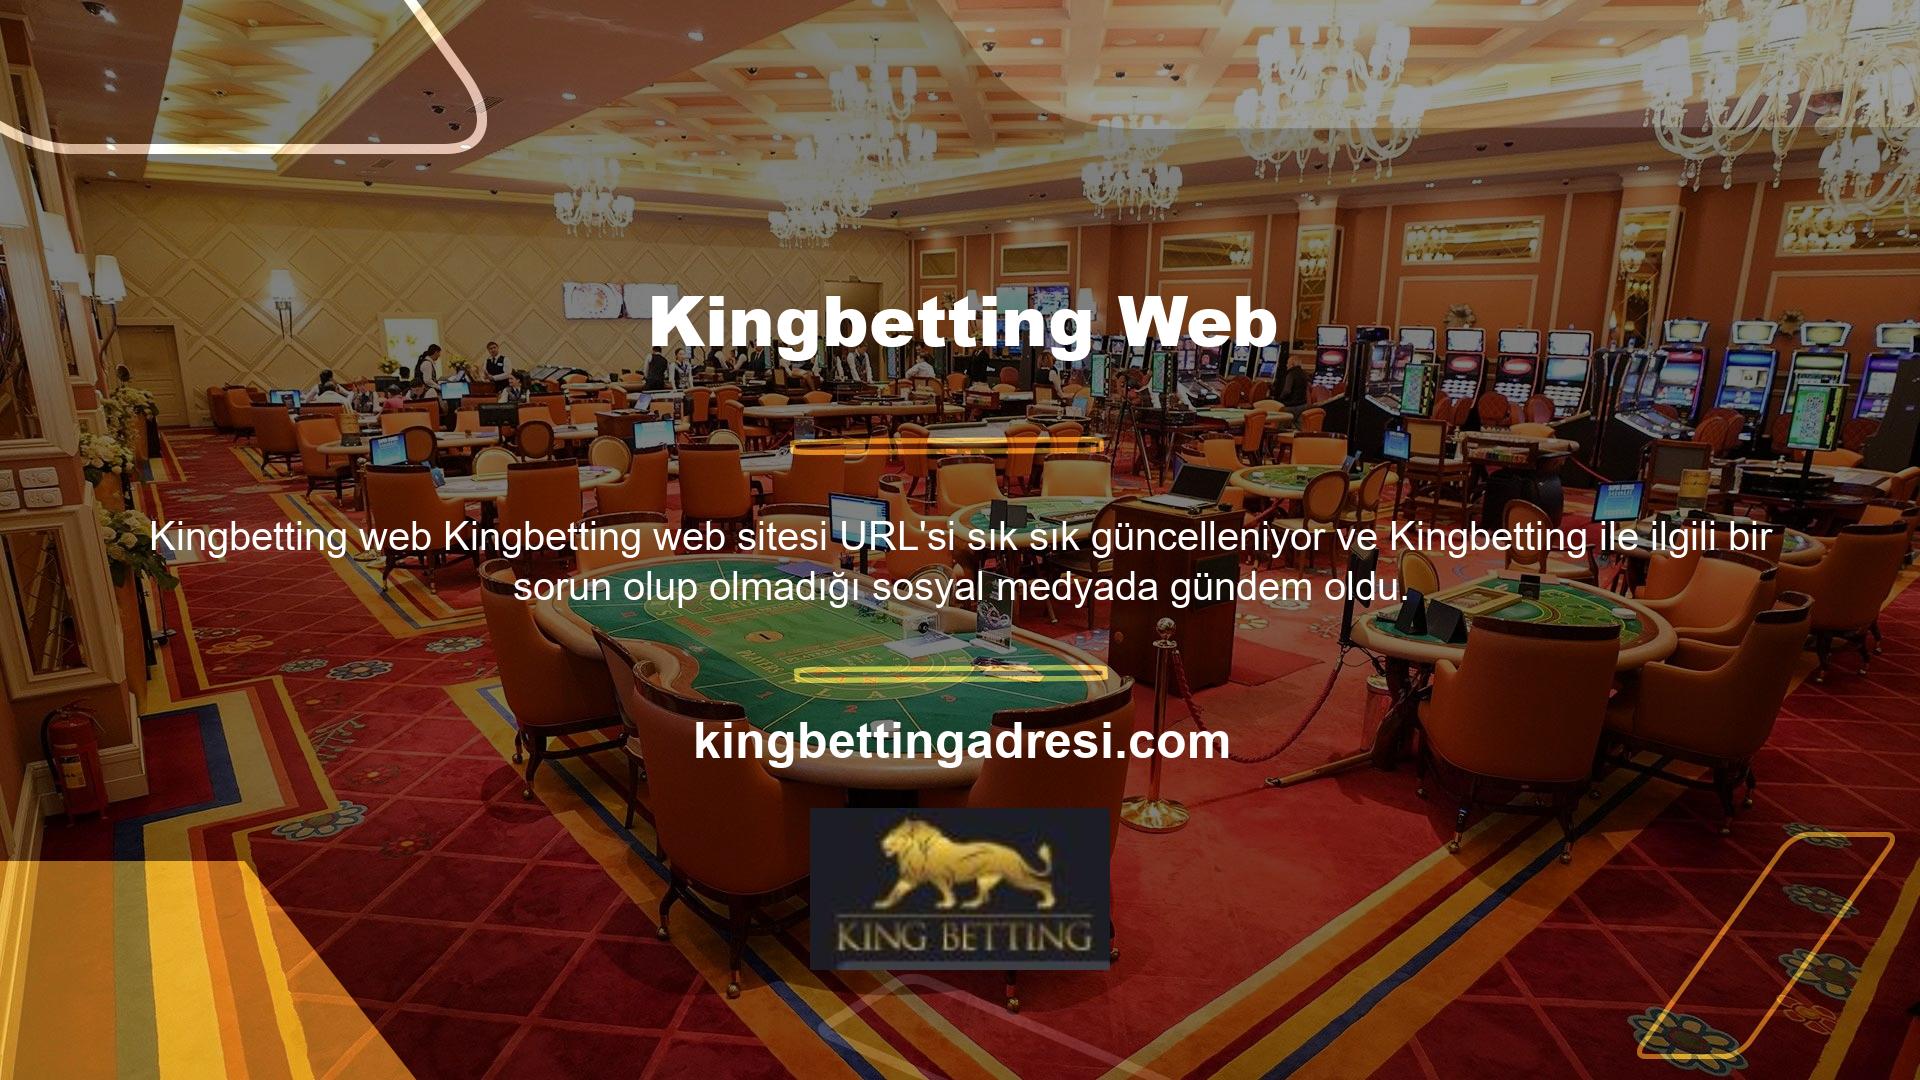 Casino sitesinin URL'sini güncelledim, ancak yakın zamanda kapatıldı, bu nedenle tartışma orijinal metni yansıtmıyor